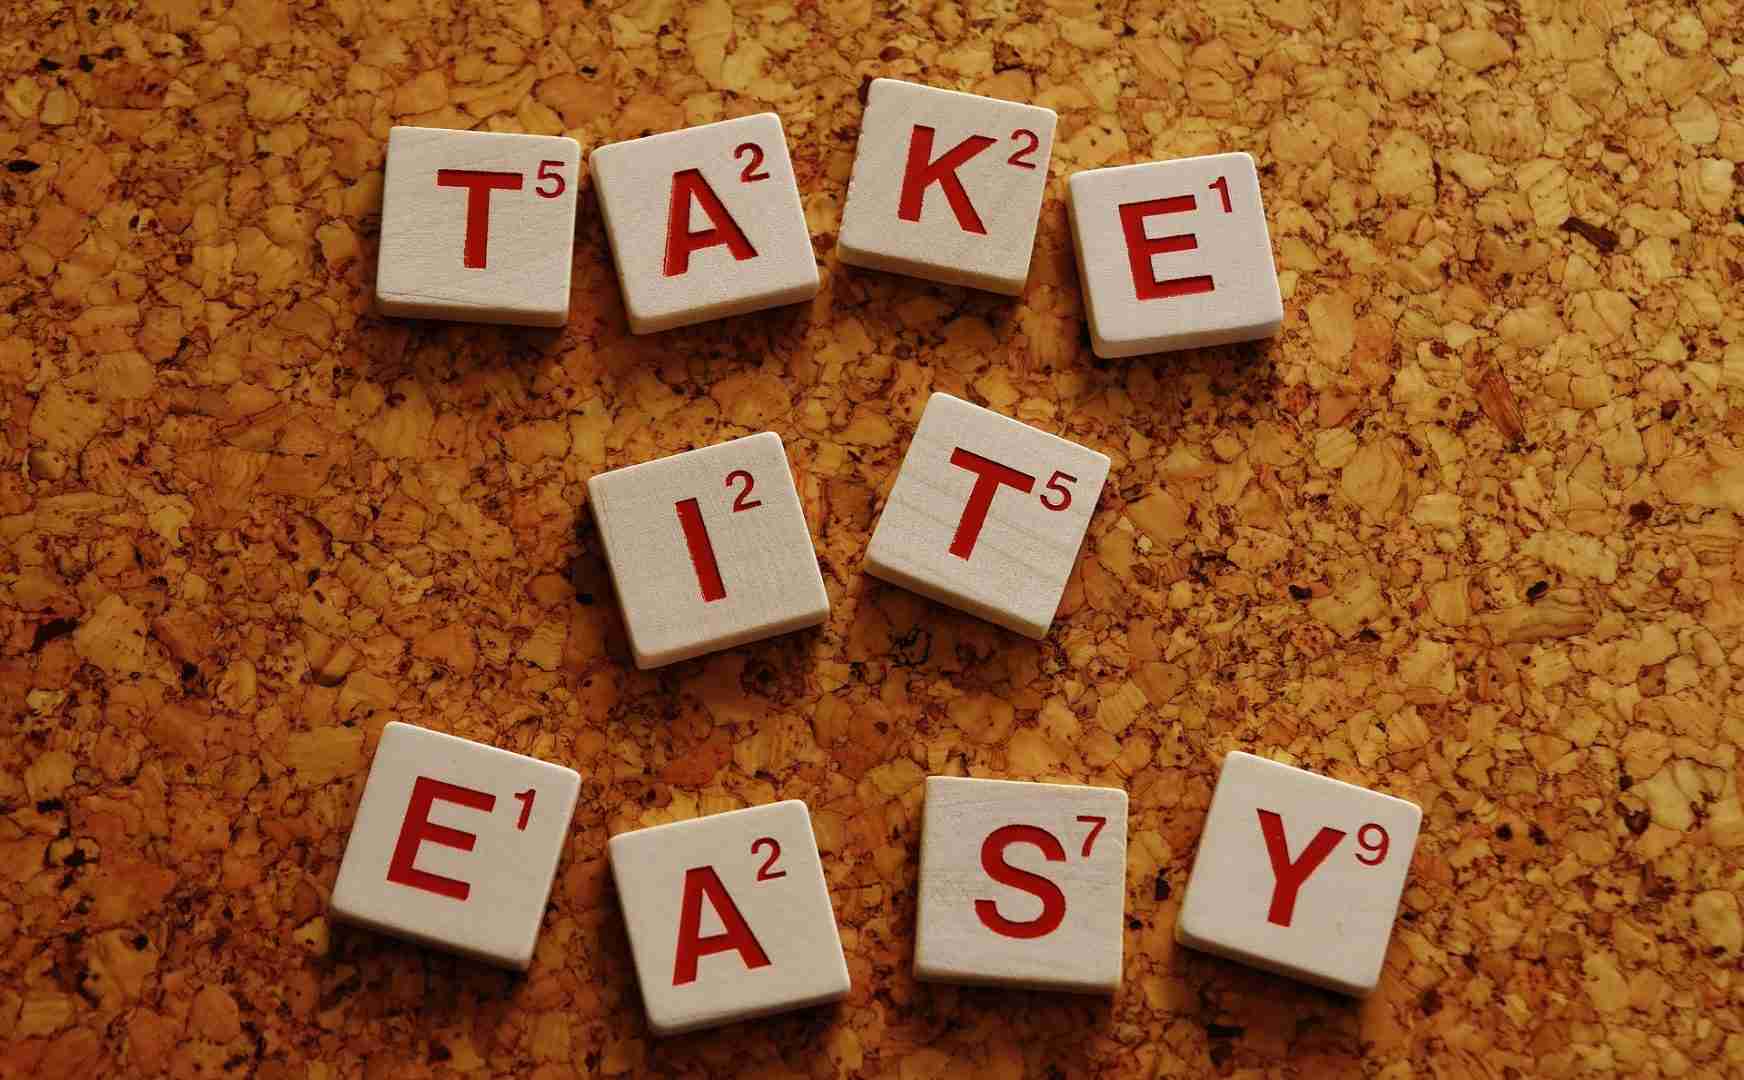 "take it easy" in scrabble letters